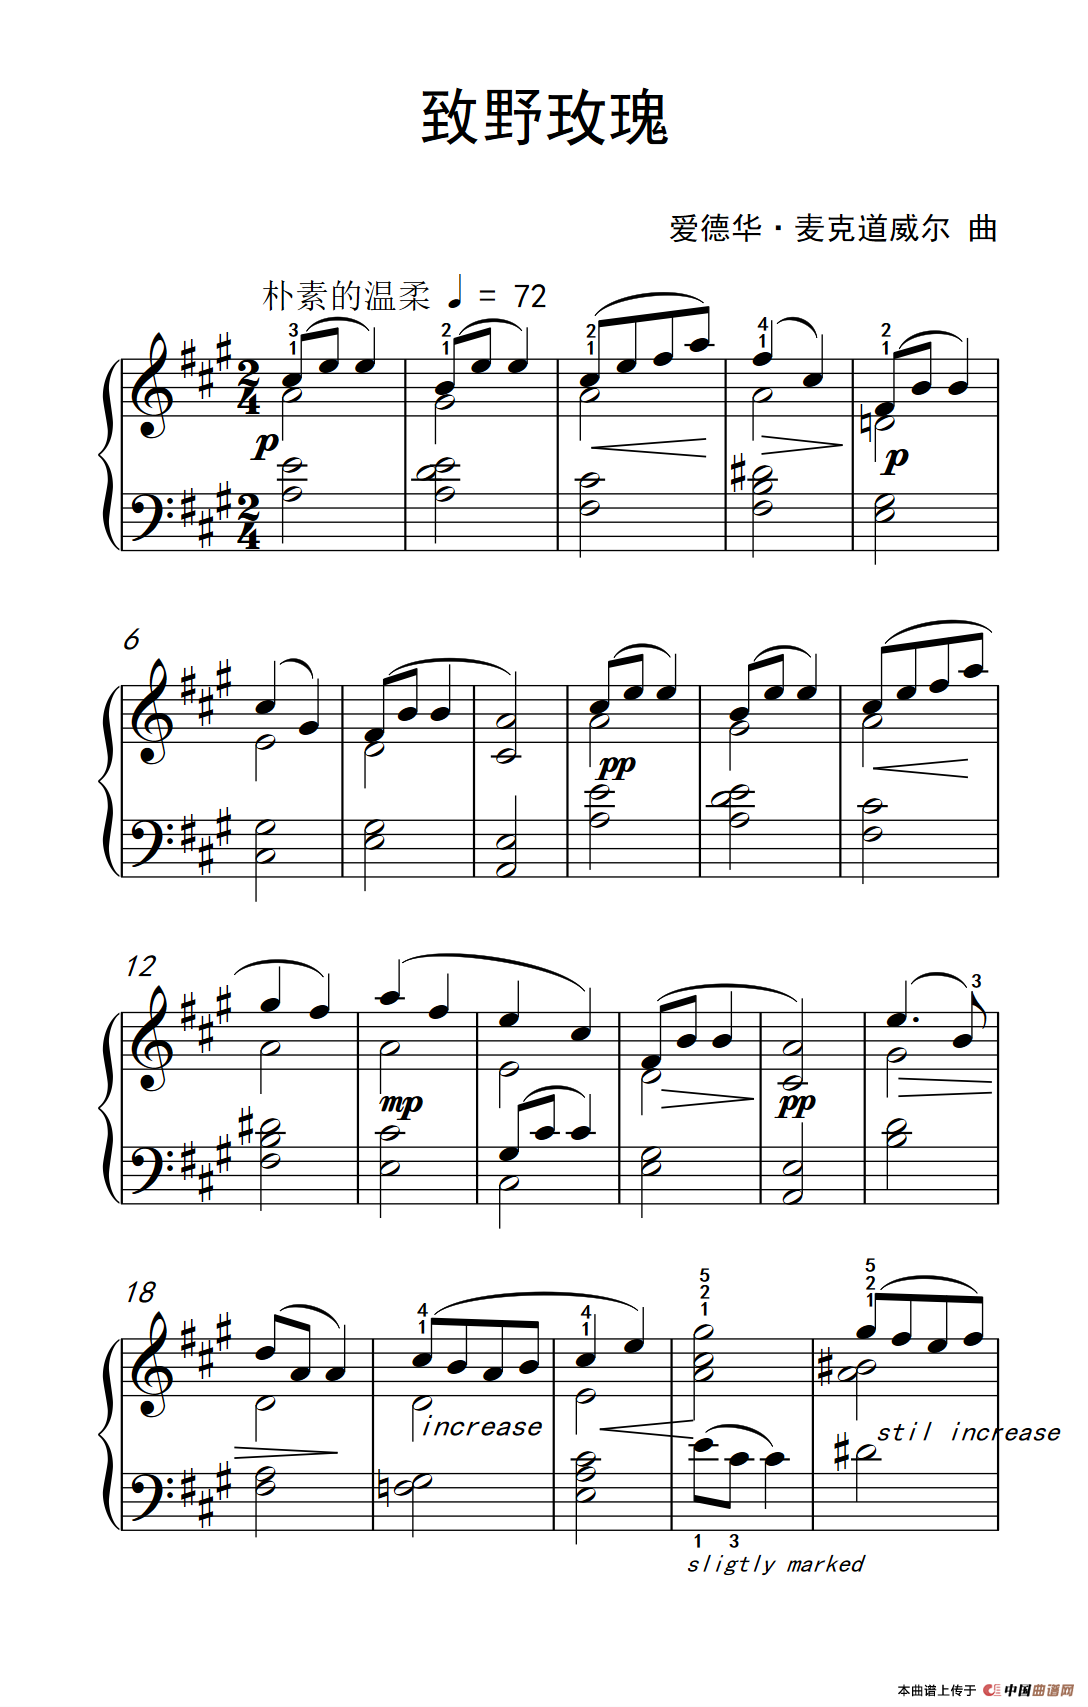 《致野玫瑰》钢琴曲谱图分享